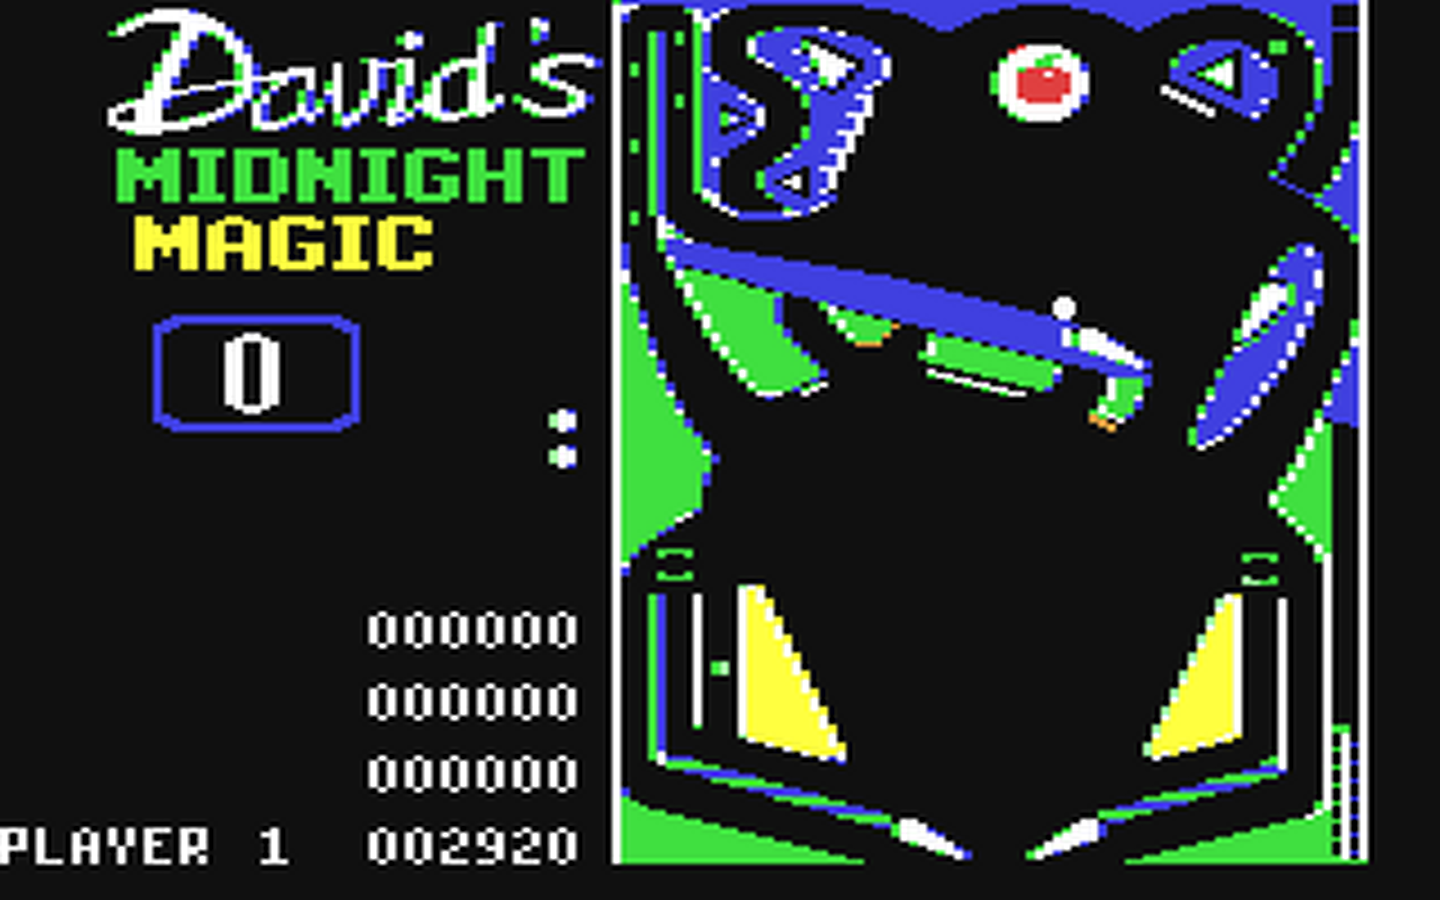 C64 GameBase David's_Midnight_Magic Broderbund 1983